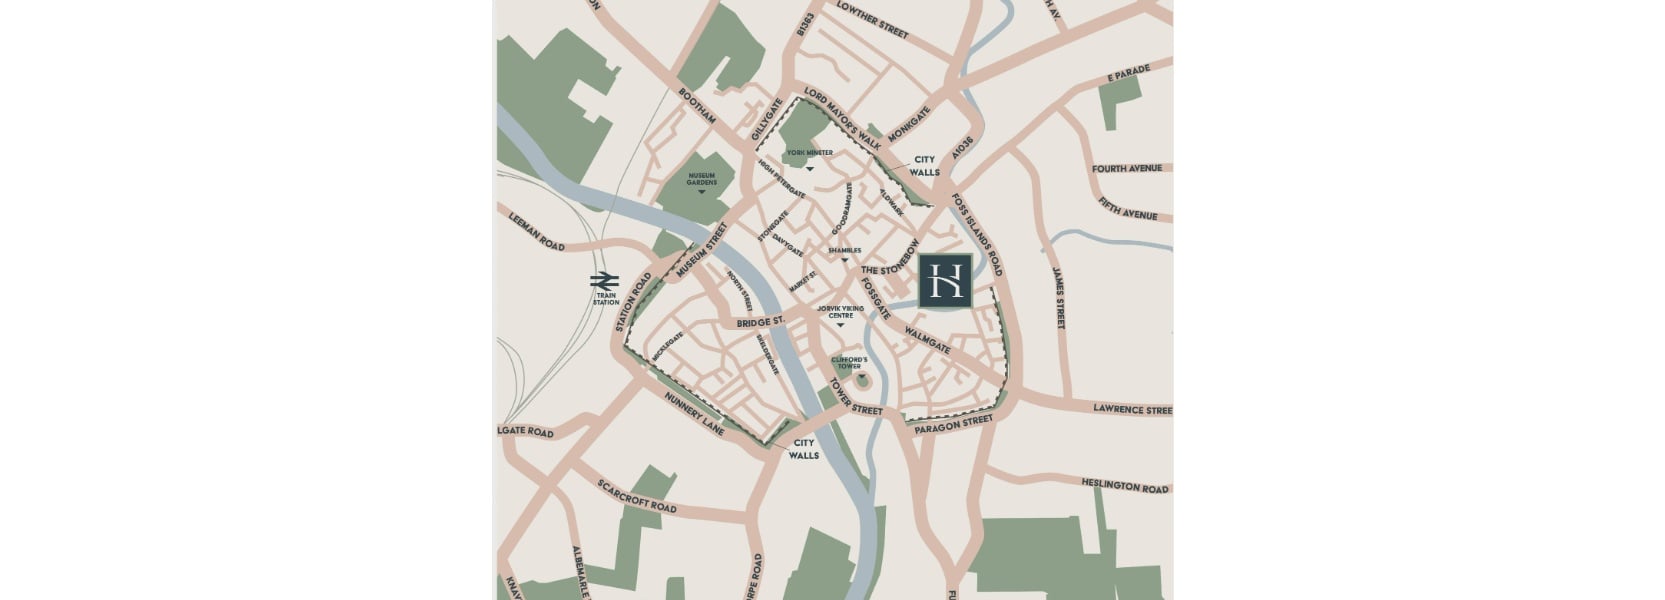 Hungate Area Map_1665x600.jpg